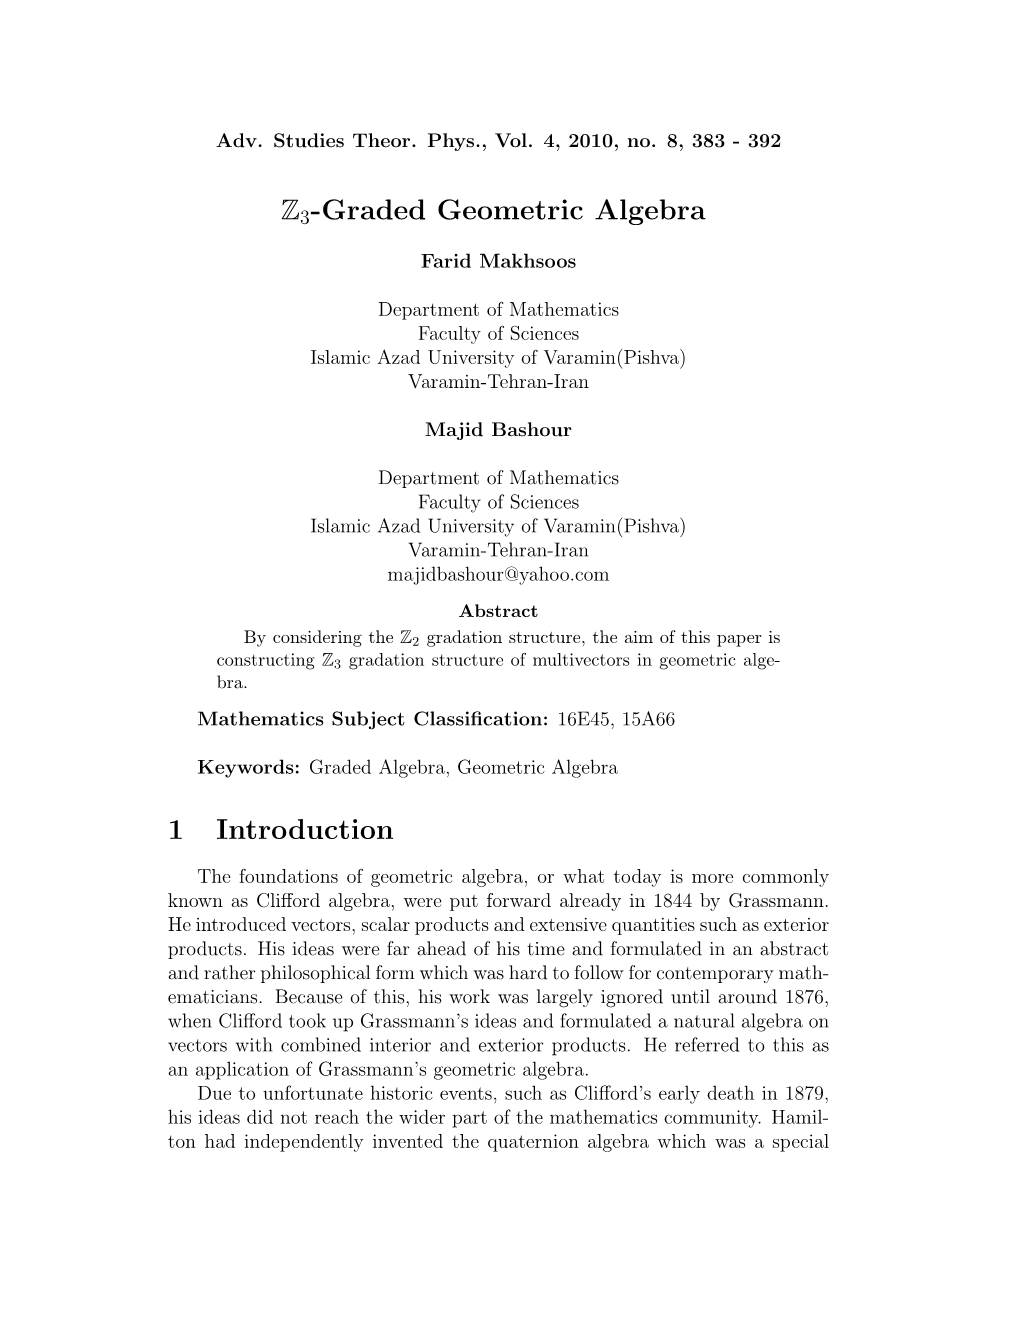 Z3-Graded Geometric Algebra 1 Introduction